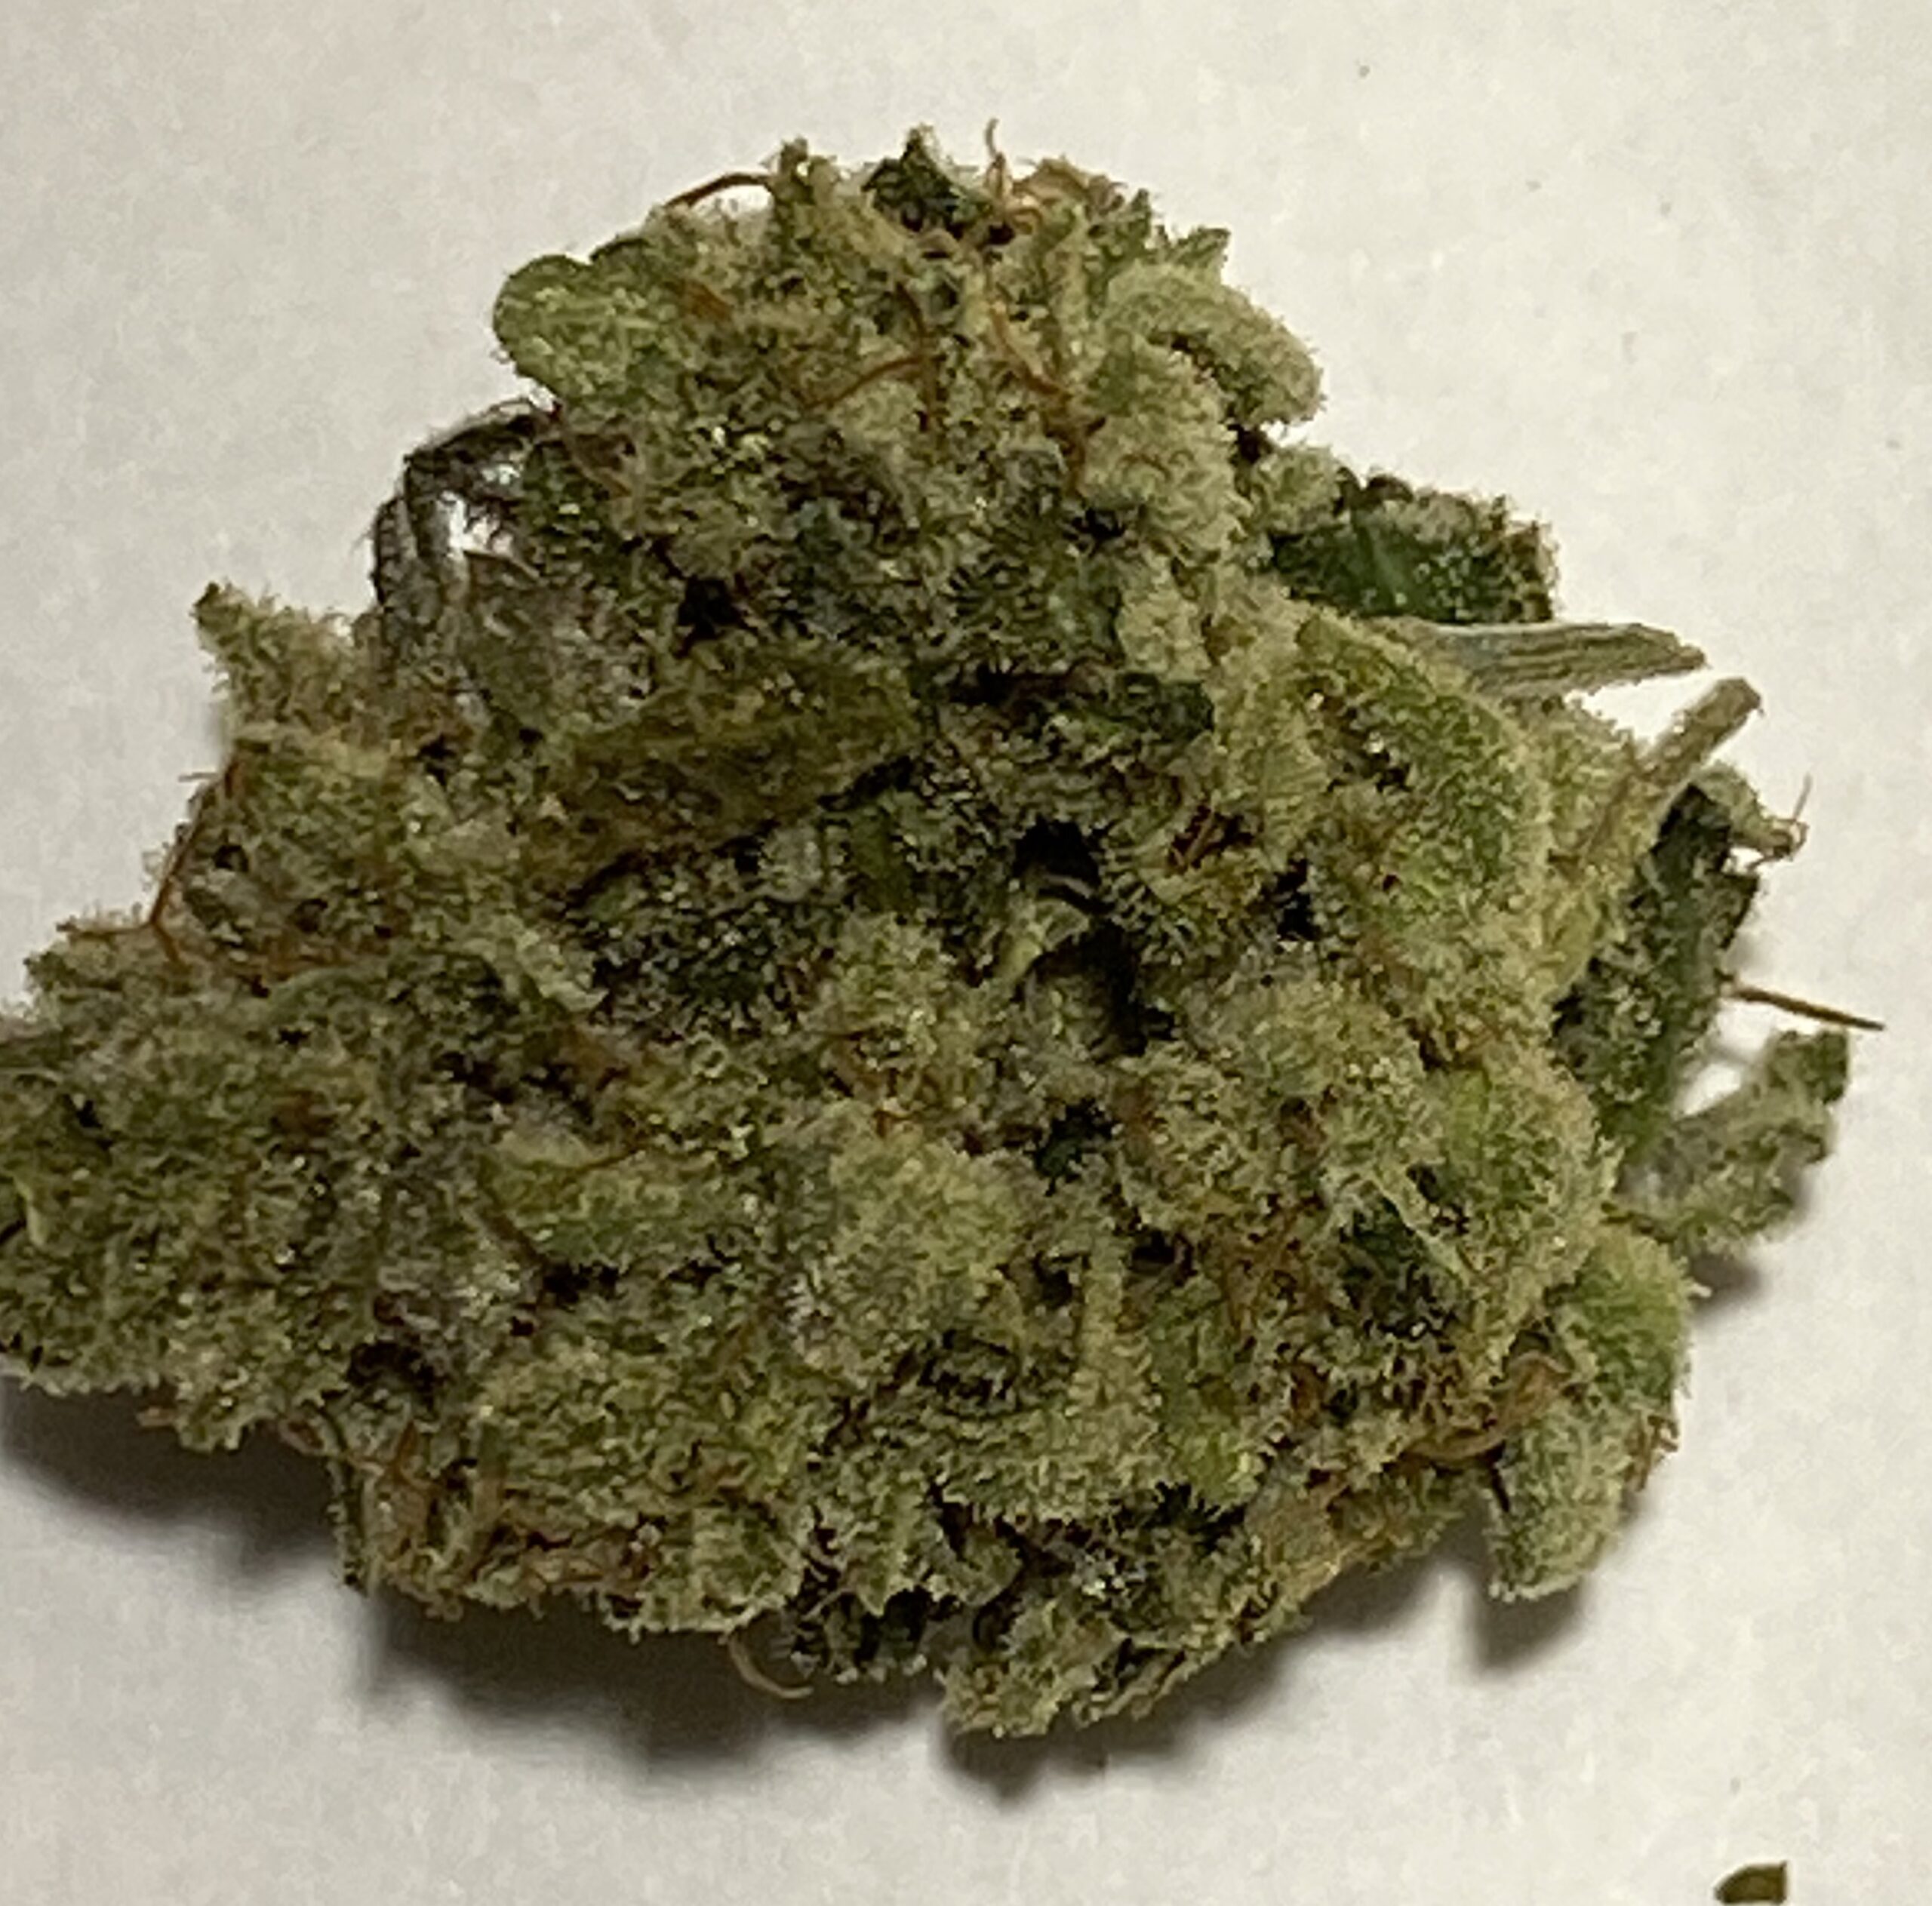 Gorilla Glue #4 (marijuana review) – The Denver Post